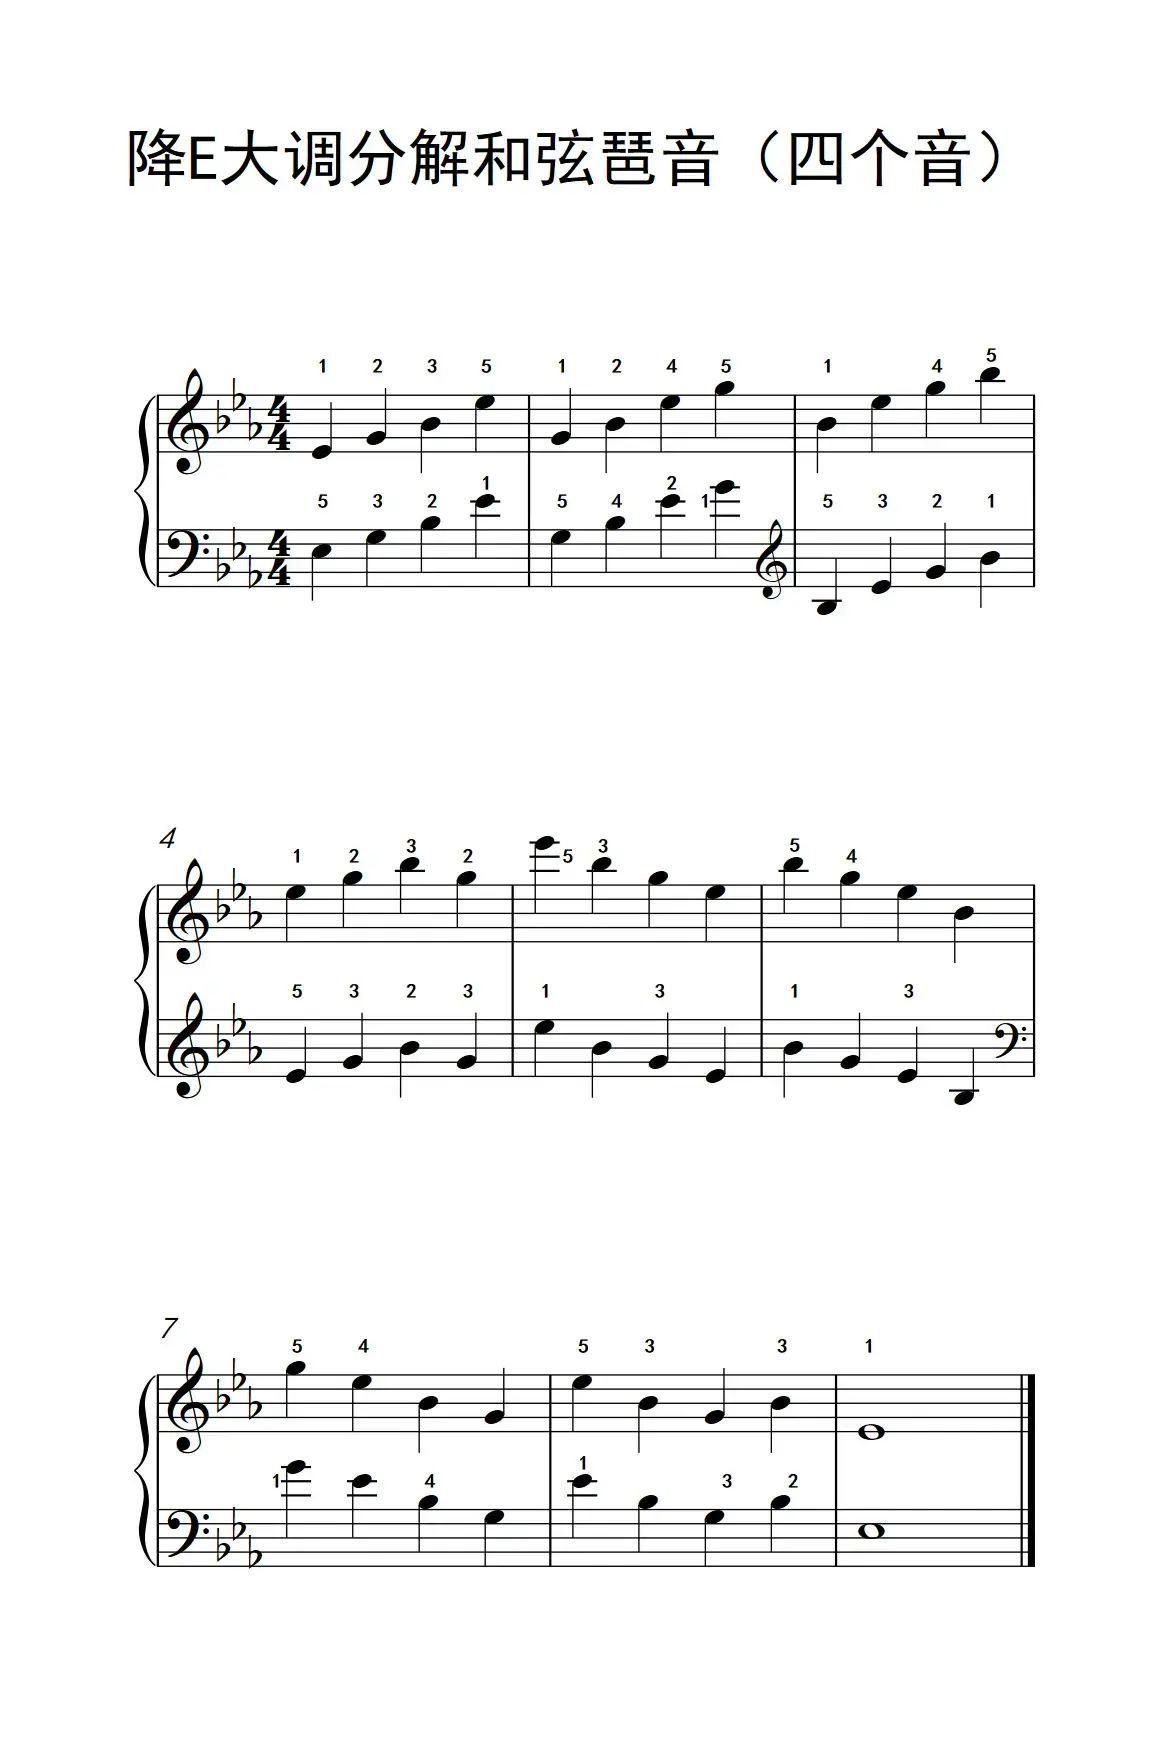 降E大调分解和弦琶音（四个音）（孩子们的钢琴音阶、和弦与琶音 2）